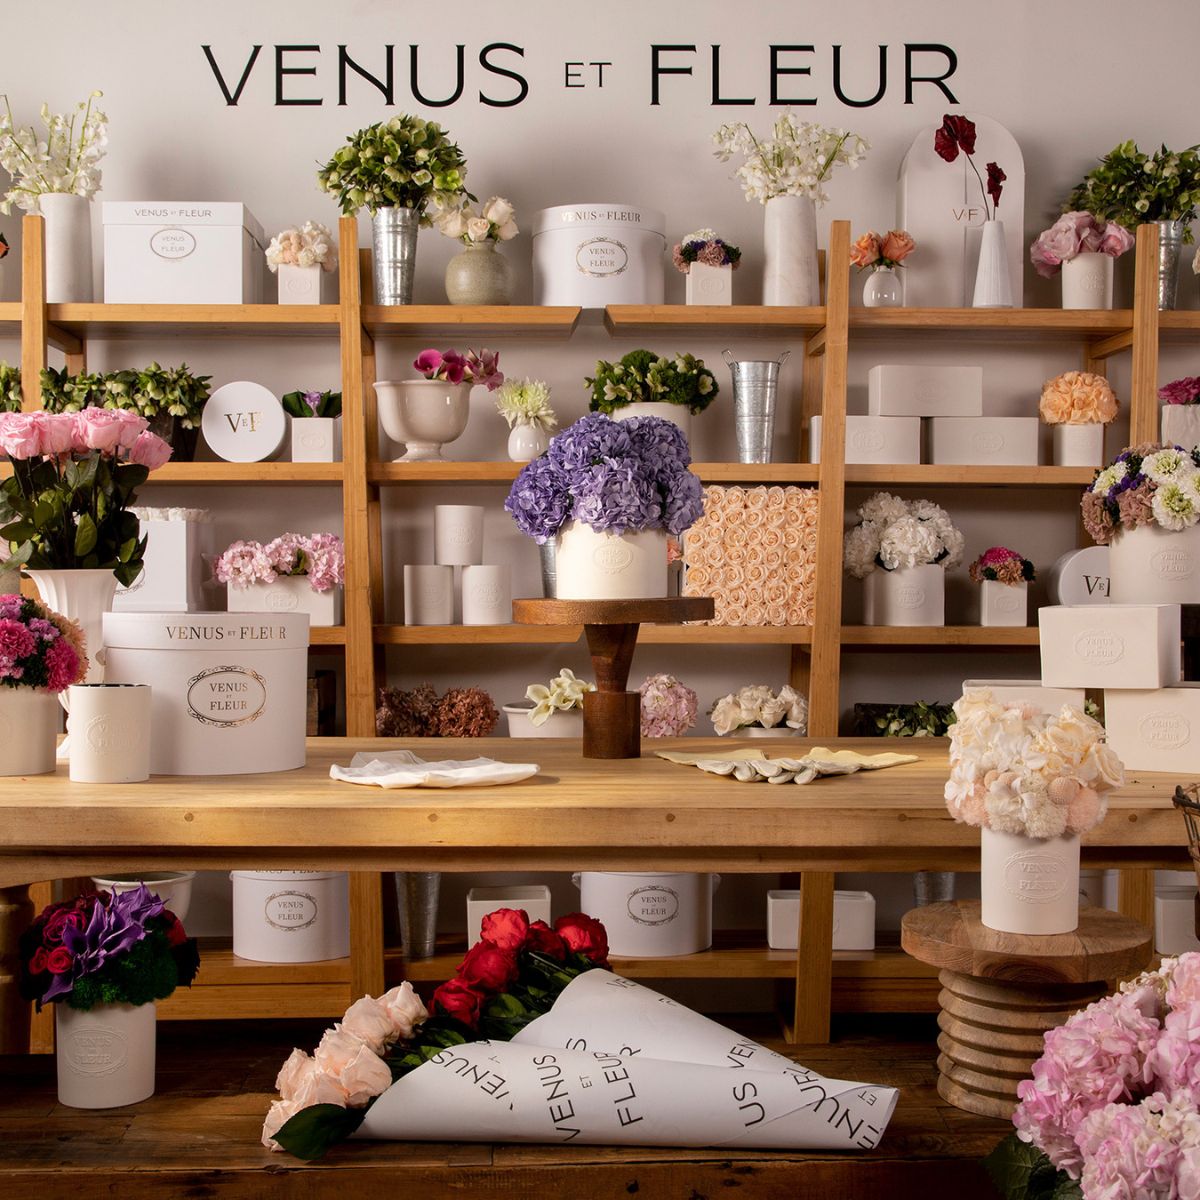 Venus et Fleur Flower Arrangements in Flower Shop